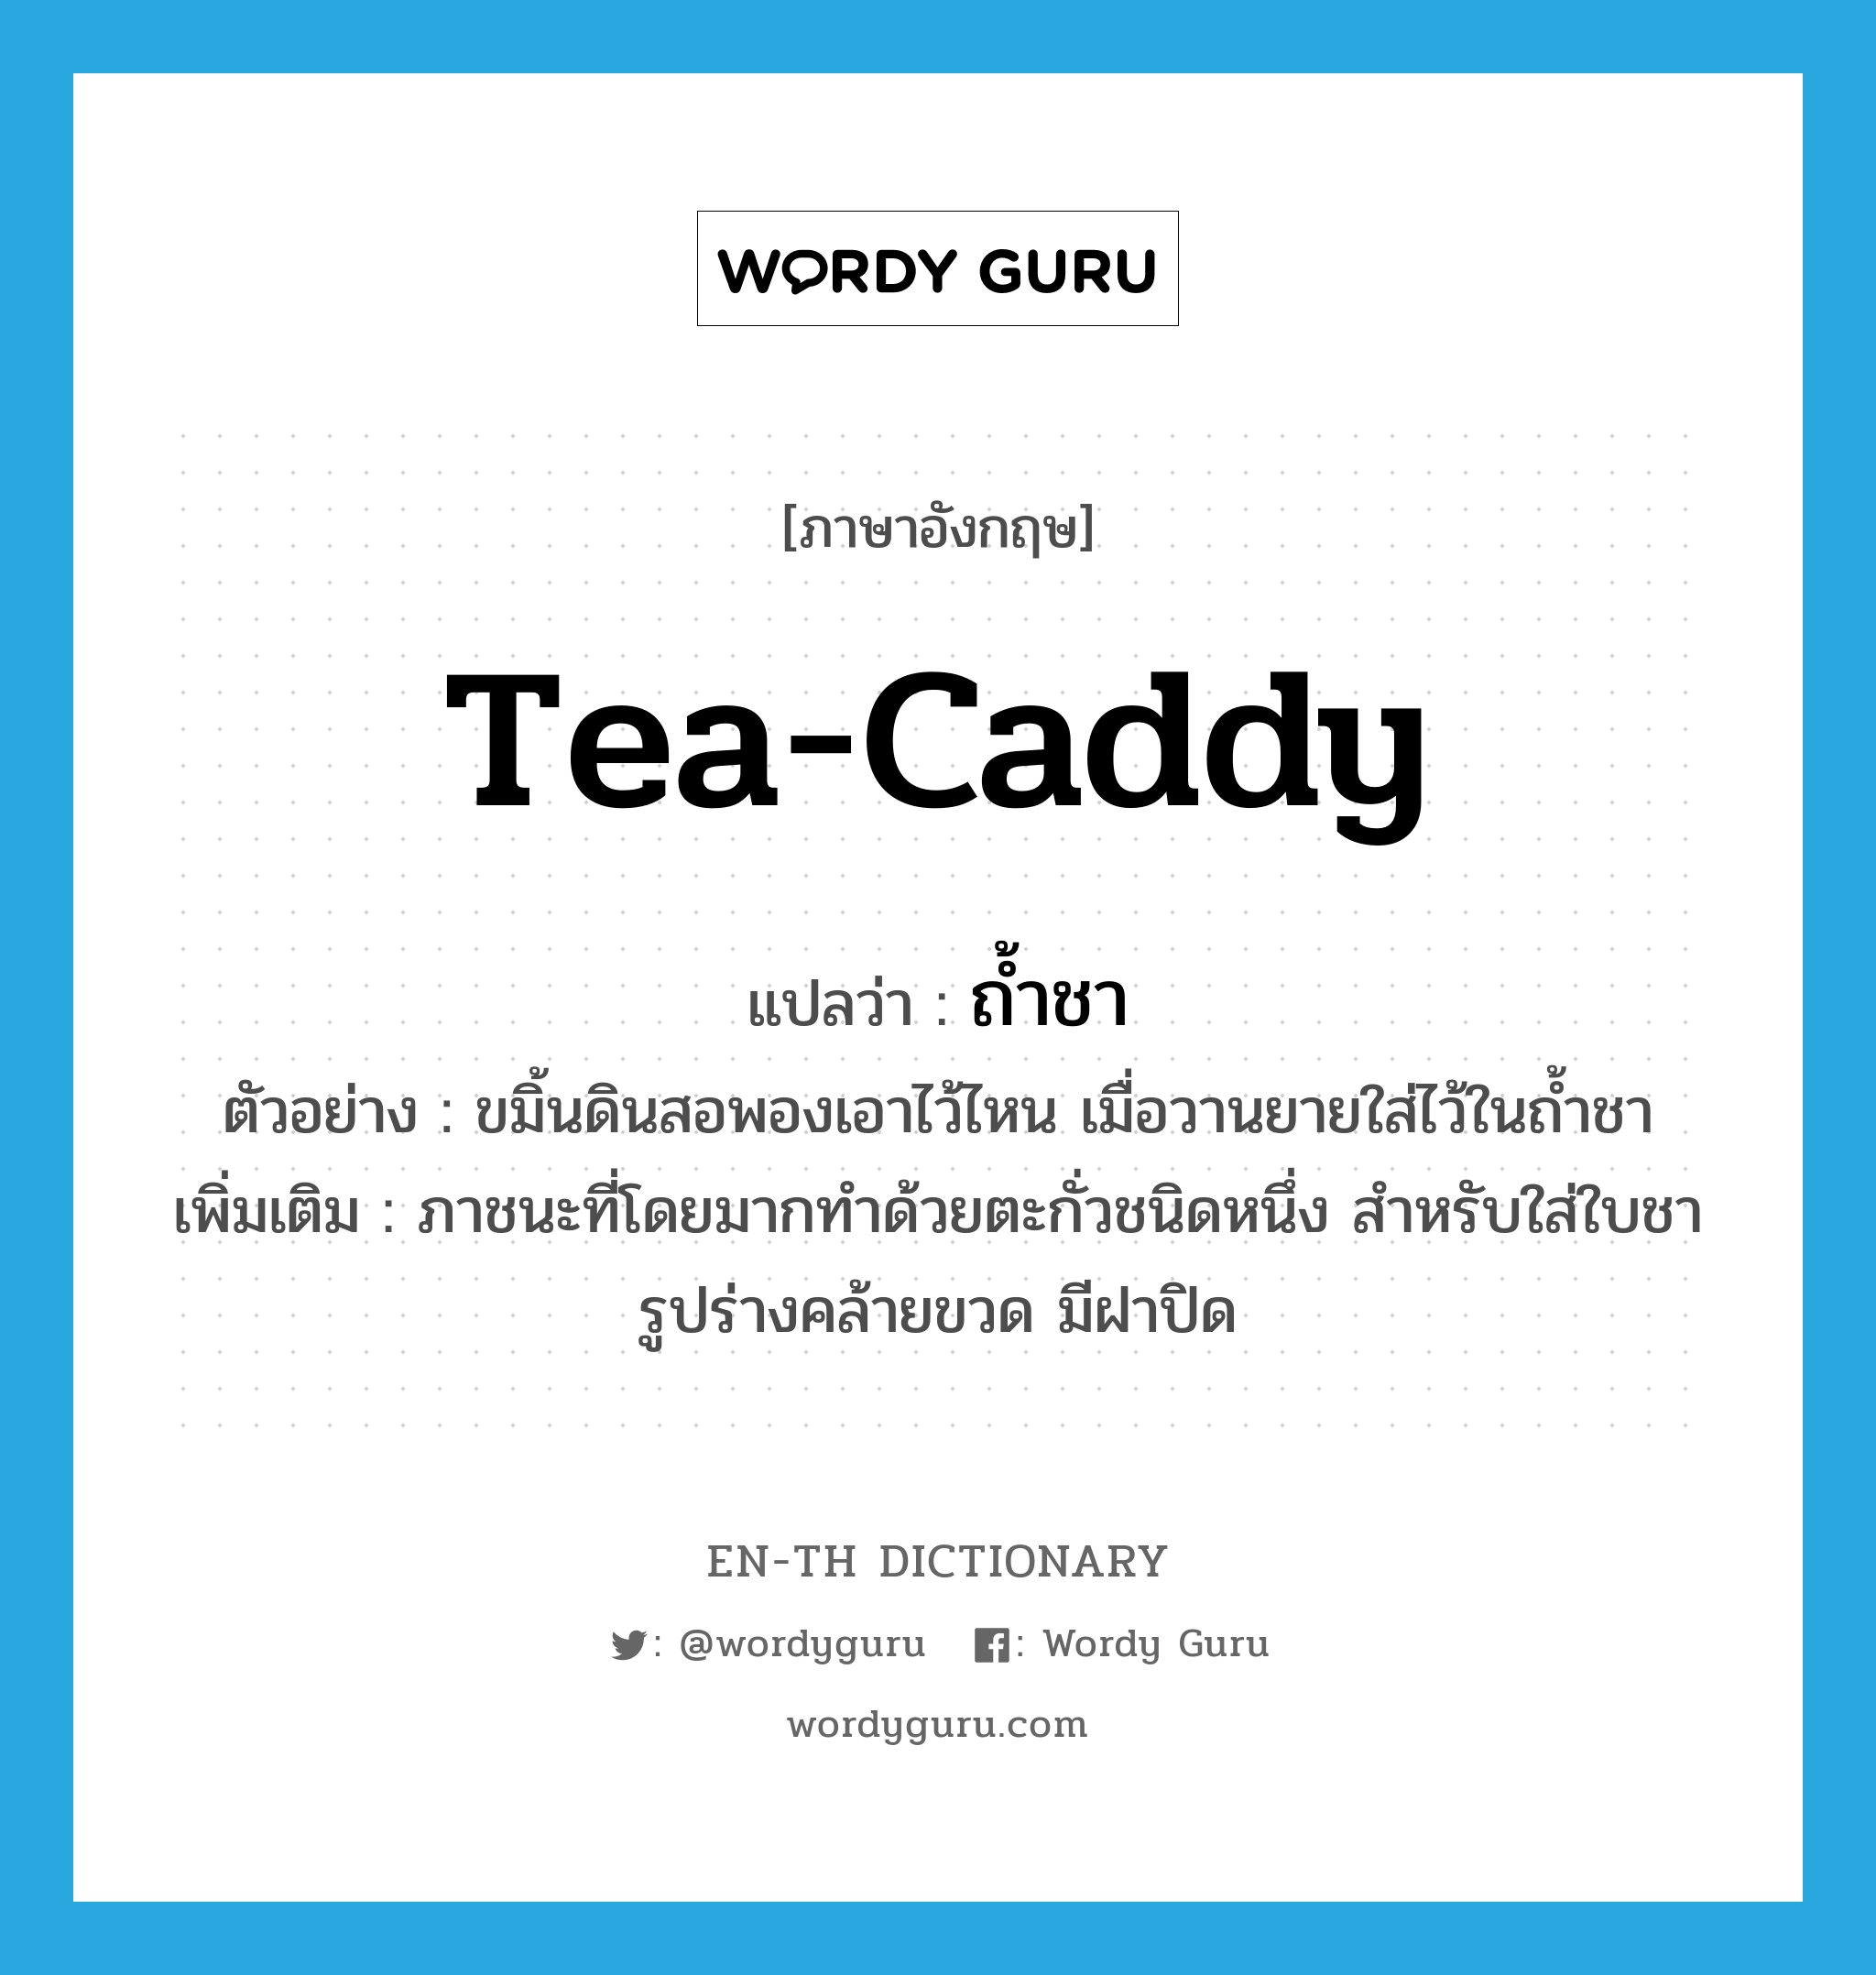 tea-caddy แปลว่า?, คำศัพท์ภาษาอังกฤษ tea-caddy แปลว่า ถ้ำชา ประเภท N ตัวอย่าง ขมิ้นดินสอพองเอาไว้ไหน เมื่อวานยายใส่ไว้ในถ้ำชา เพิ่มเติม ภาชนะที่โดยมากทำด้วยตะกั่วชนิดหนึ่ง สำหรับใส่ใบชา รูปร่างคล้ายขวด มีฝาปิด หมวด N